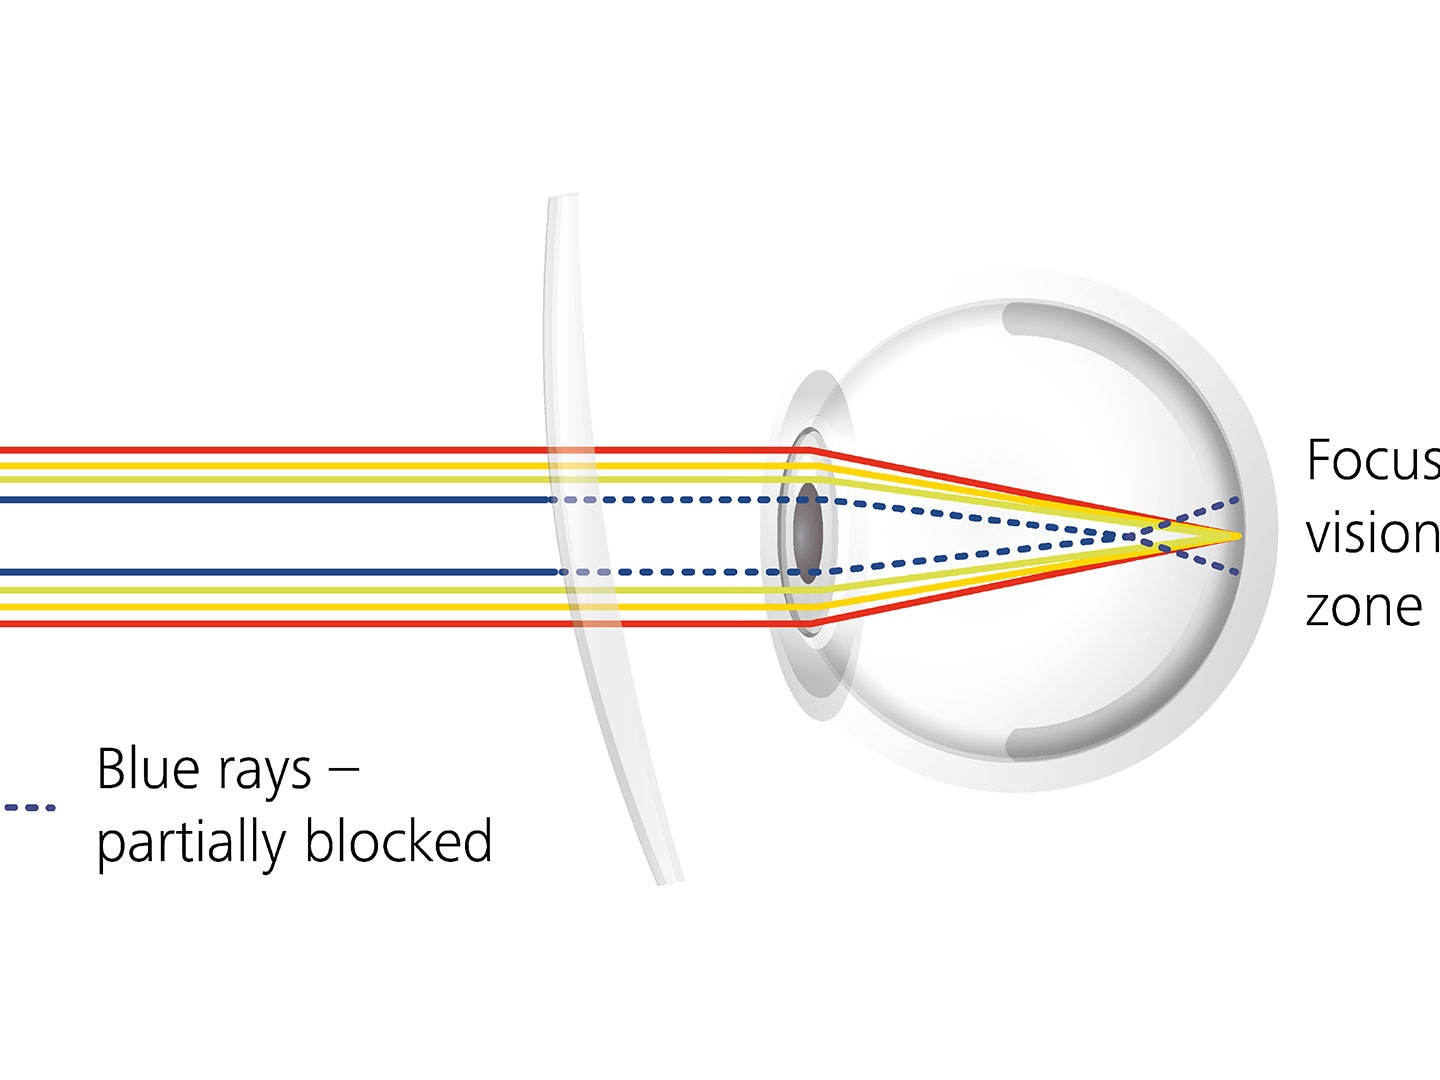 Visualizzazione di come i trattamenti delle lenti possono ridurre l'abbagliamento bloccando parzialmente i raggi blu 